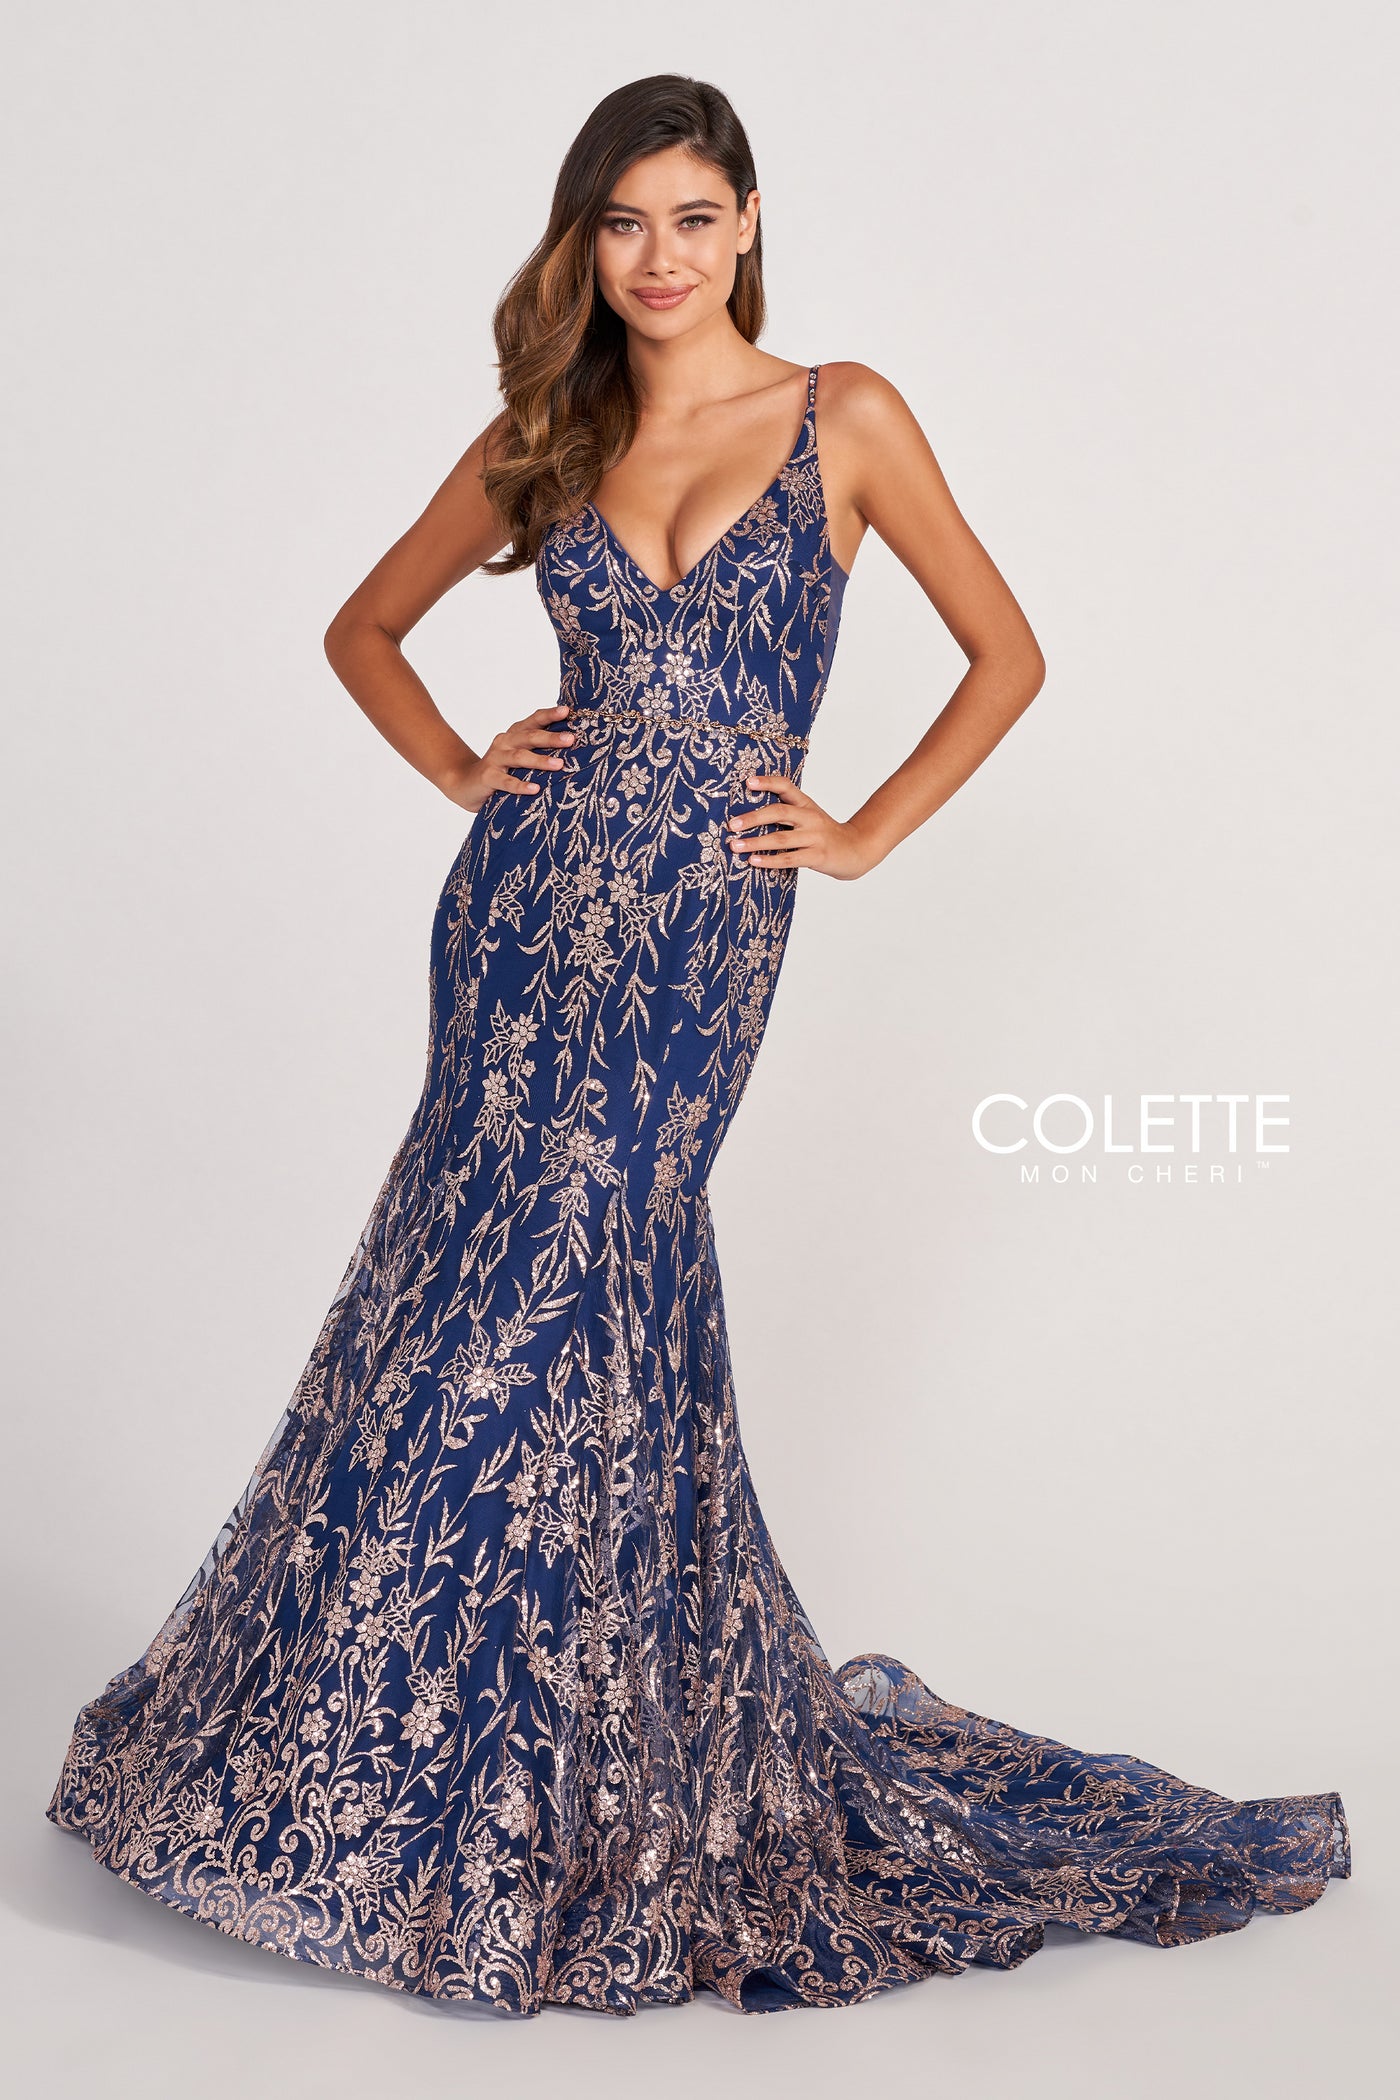 Colette CL2021 - Mydressline